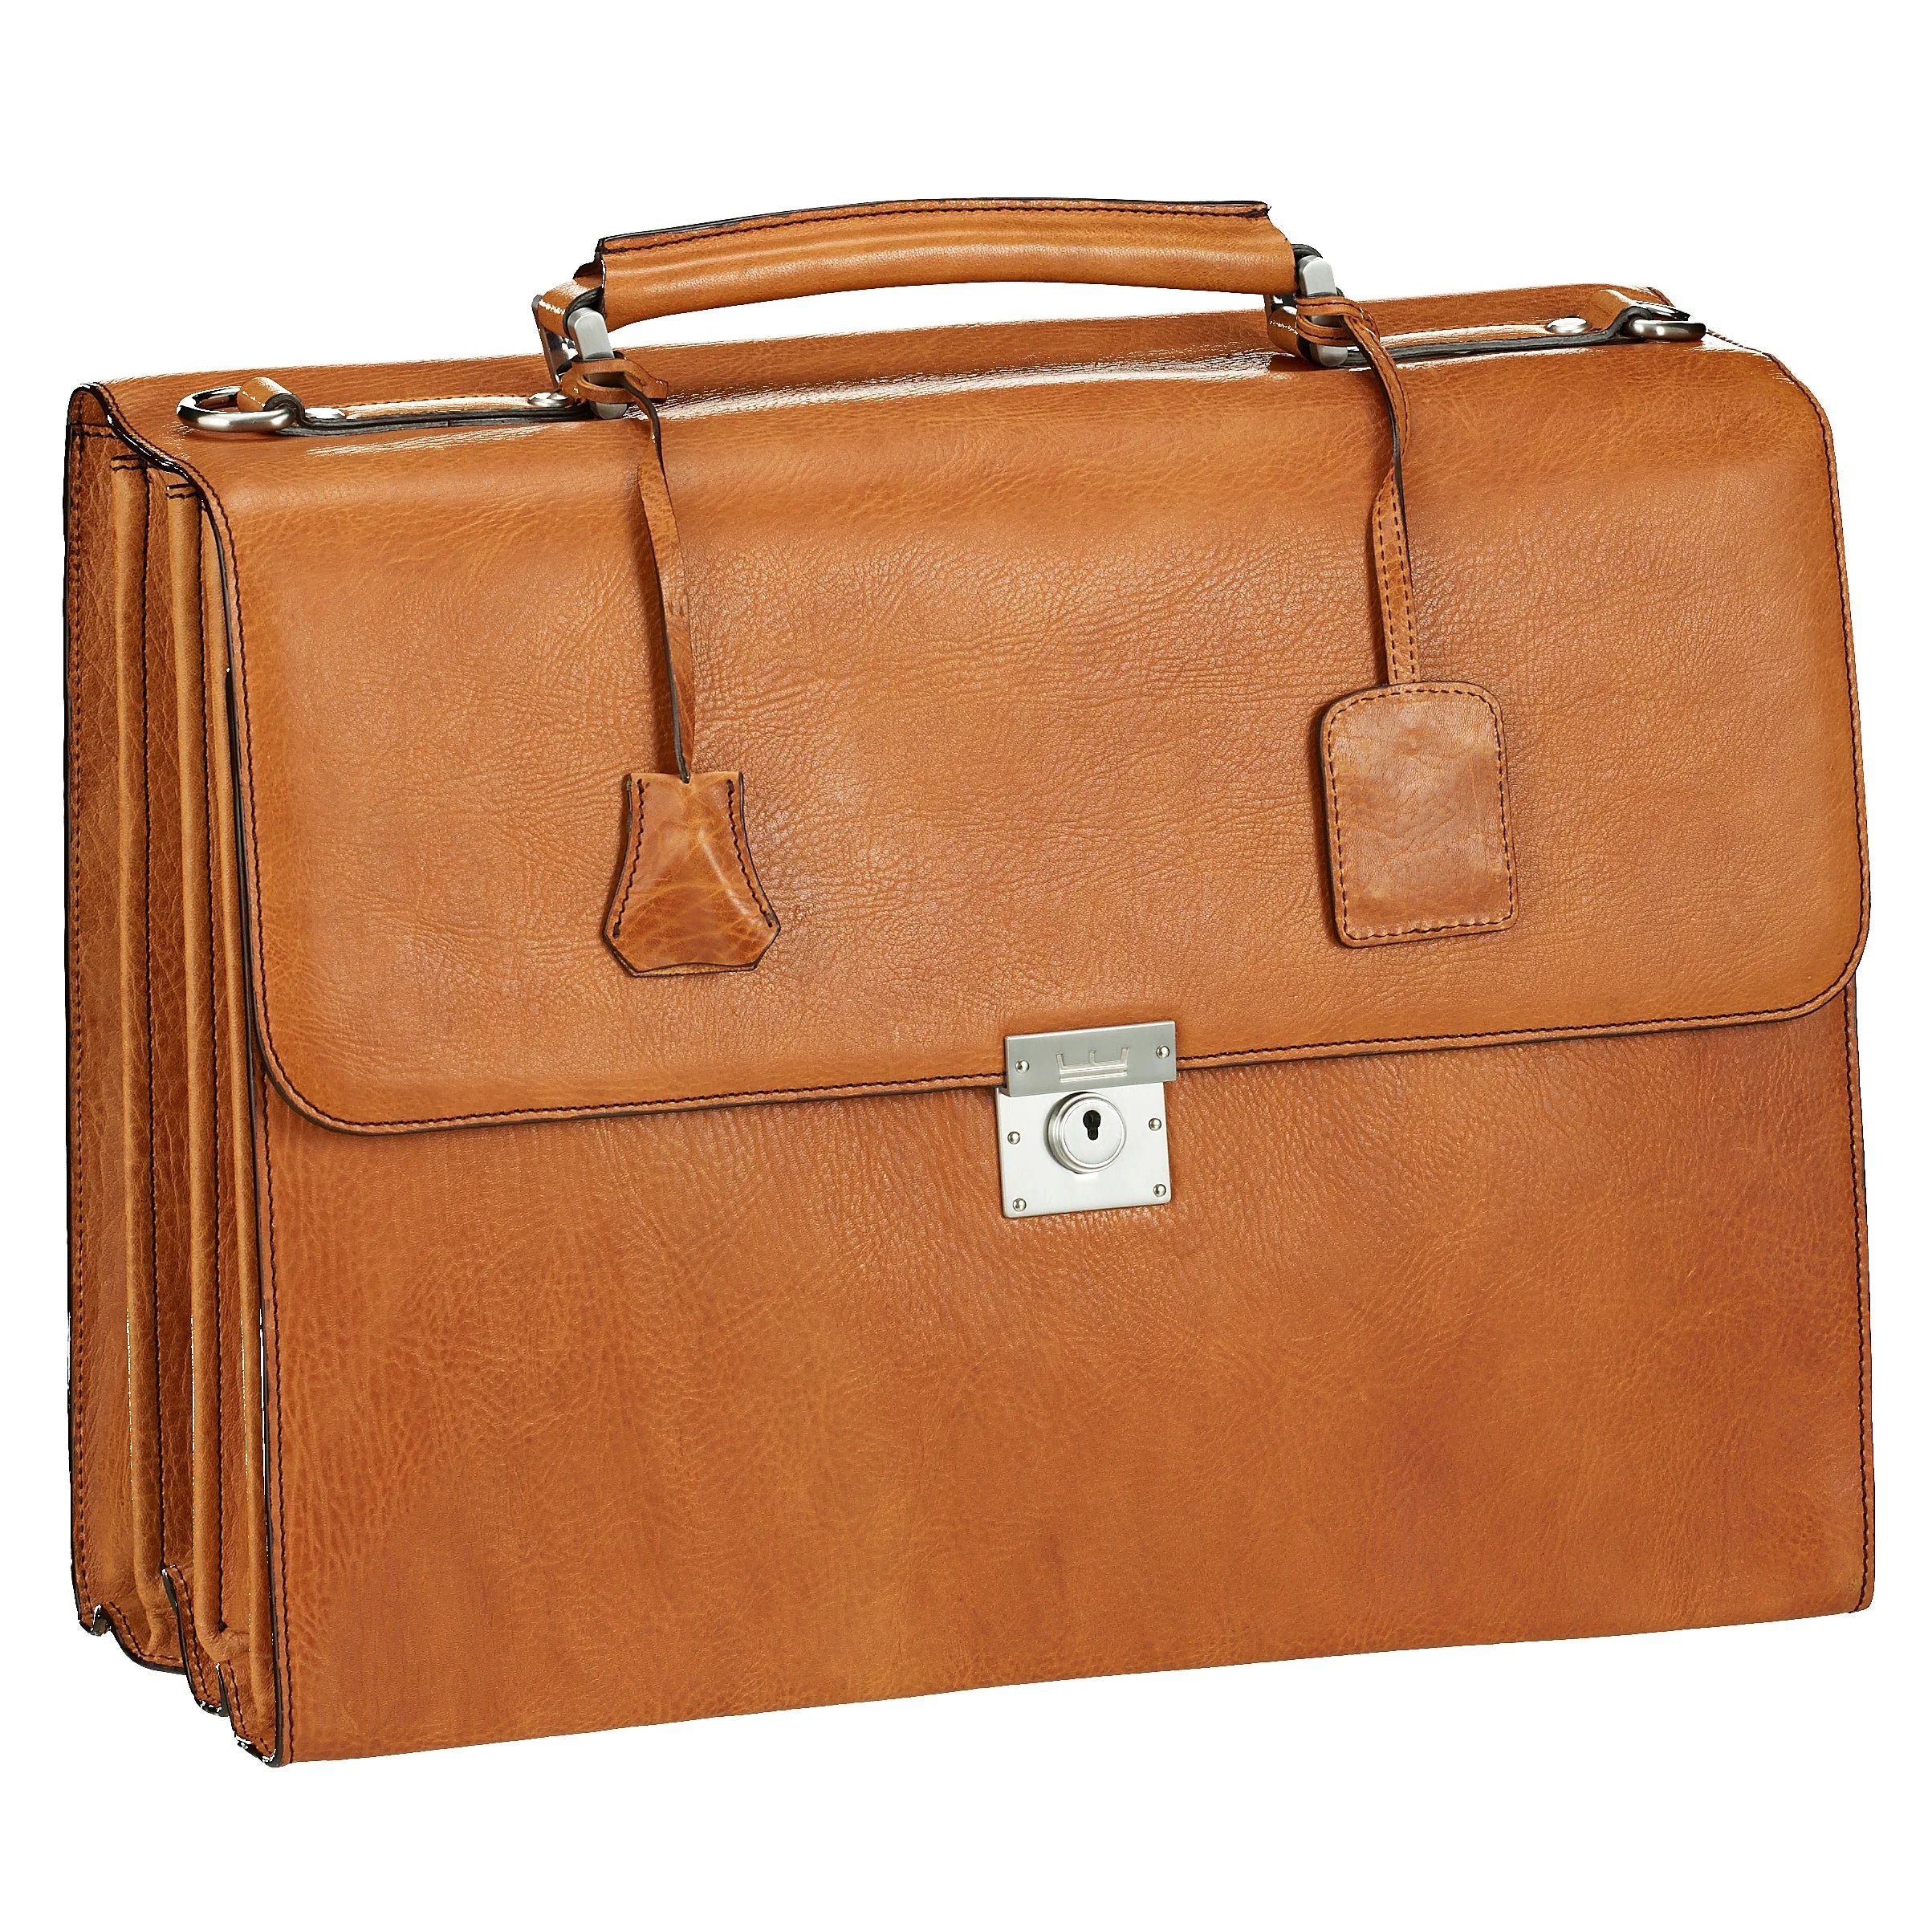 Leonhard Heyden Le Mans briefcase with laptop compartment 42 cm - cognac